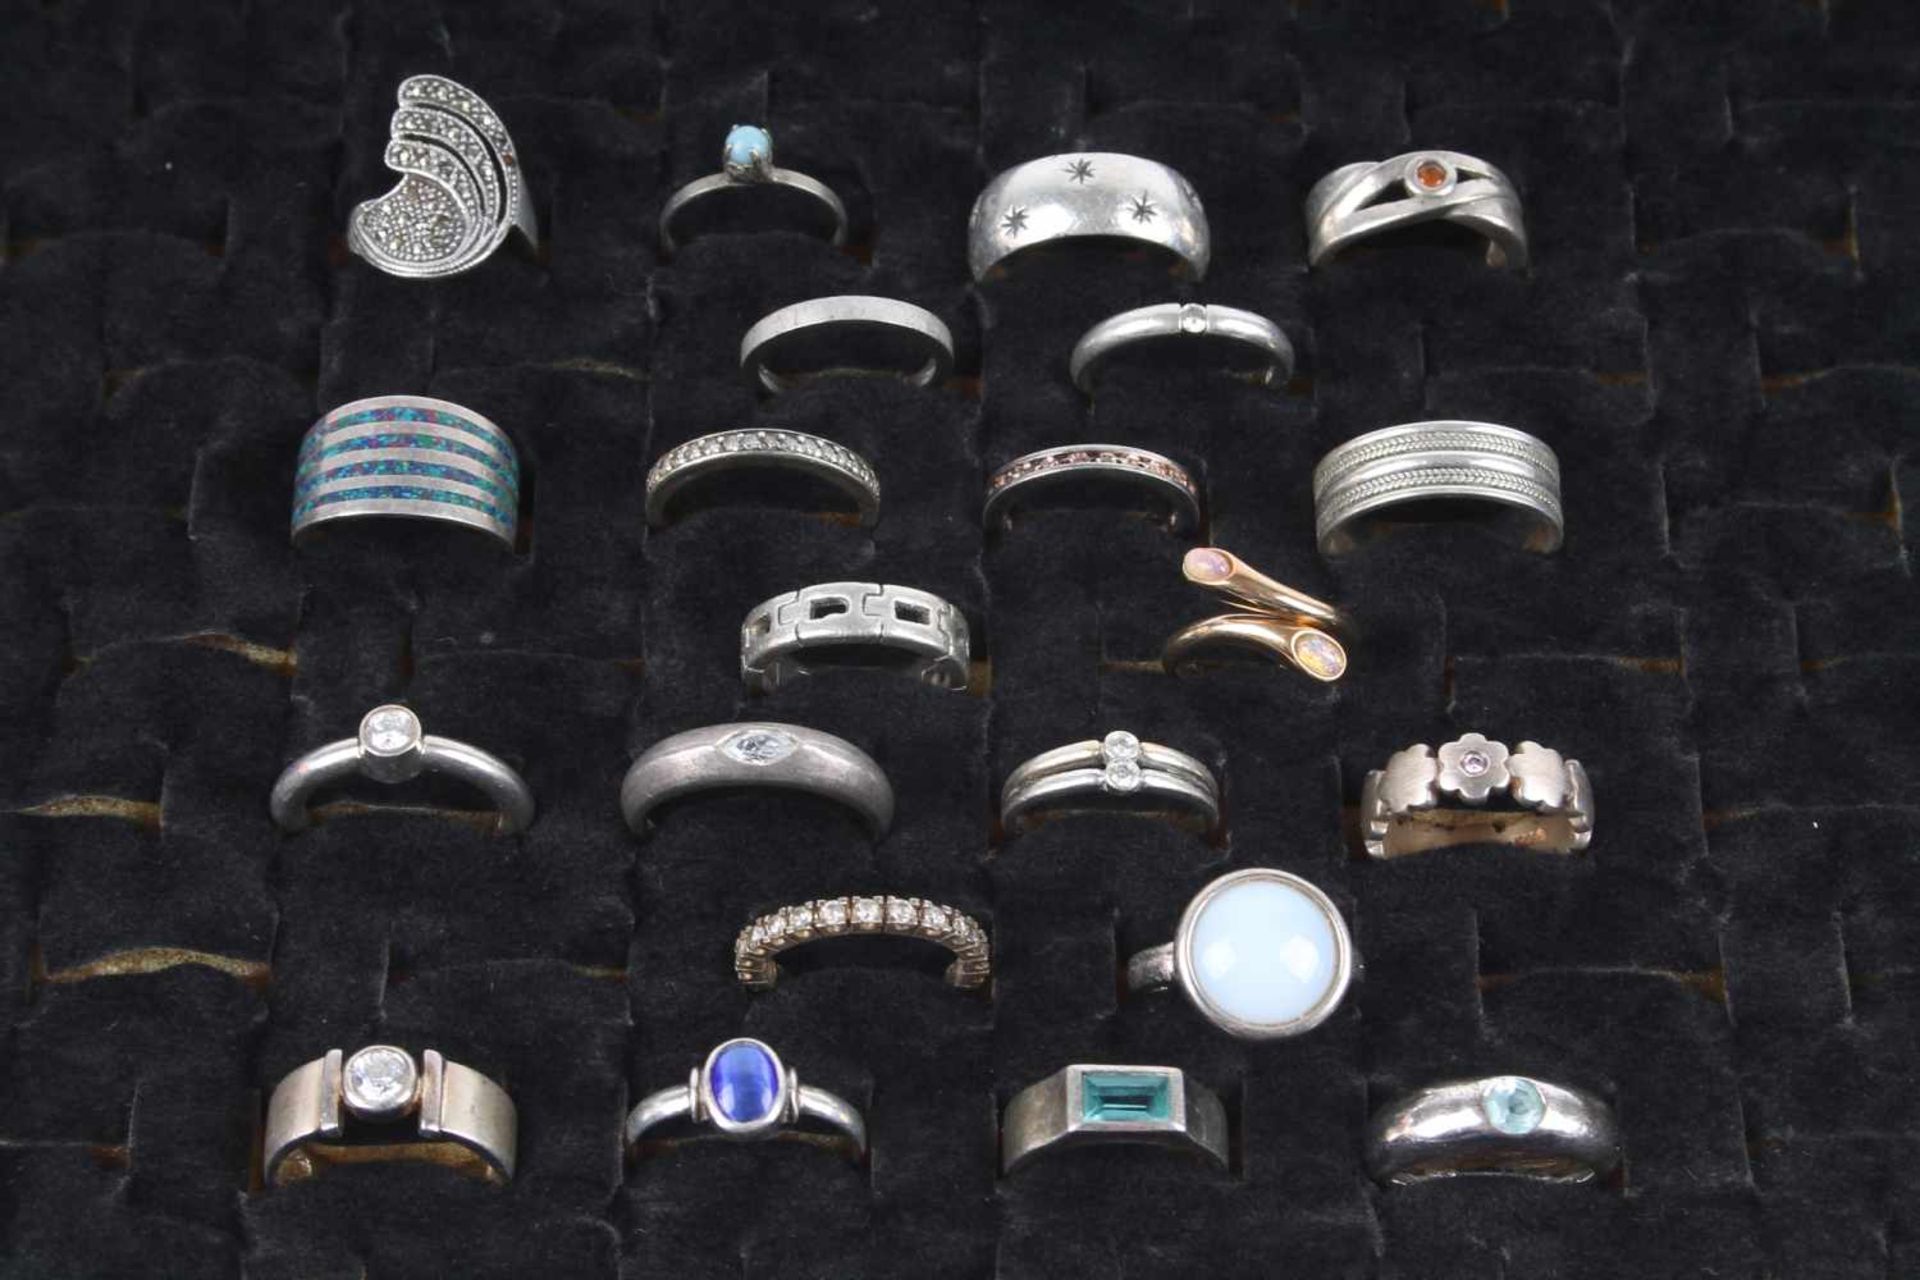 22 Silberringe, silver rings,